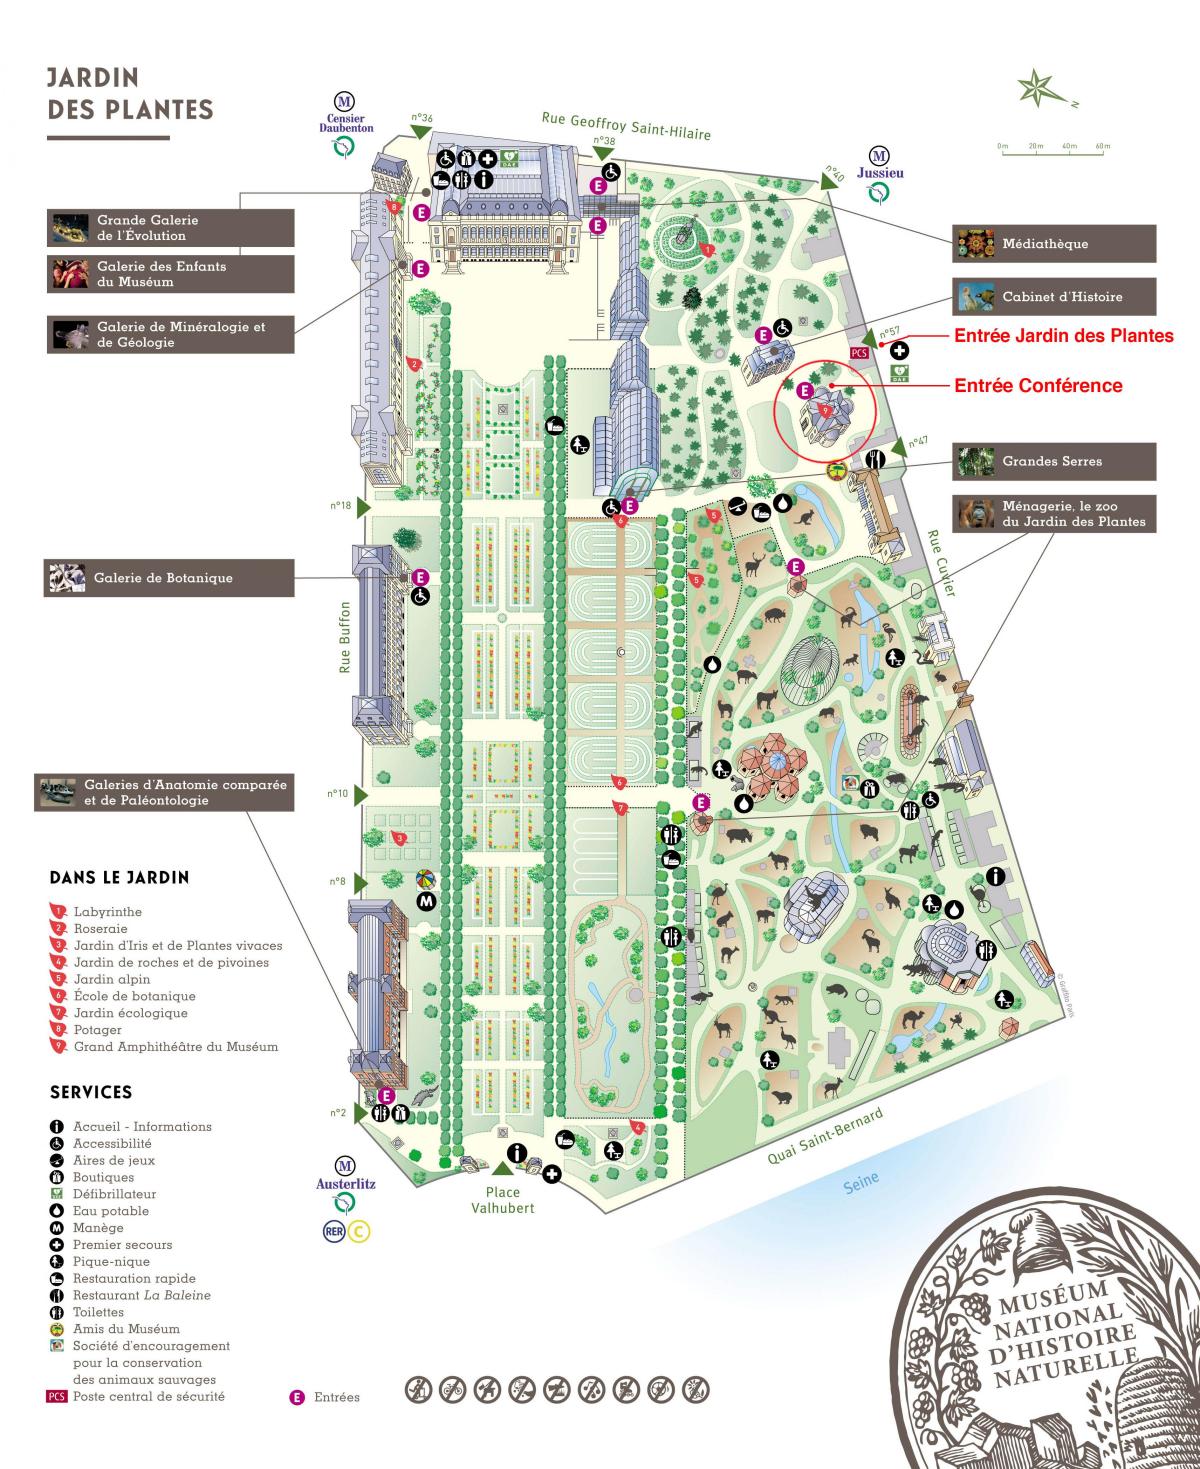 Peta dari Jardin des Plantes